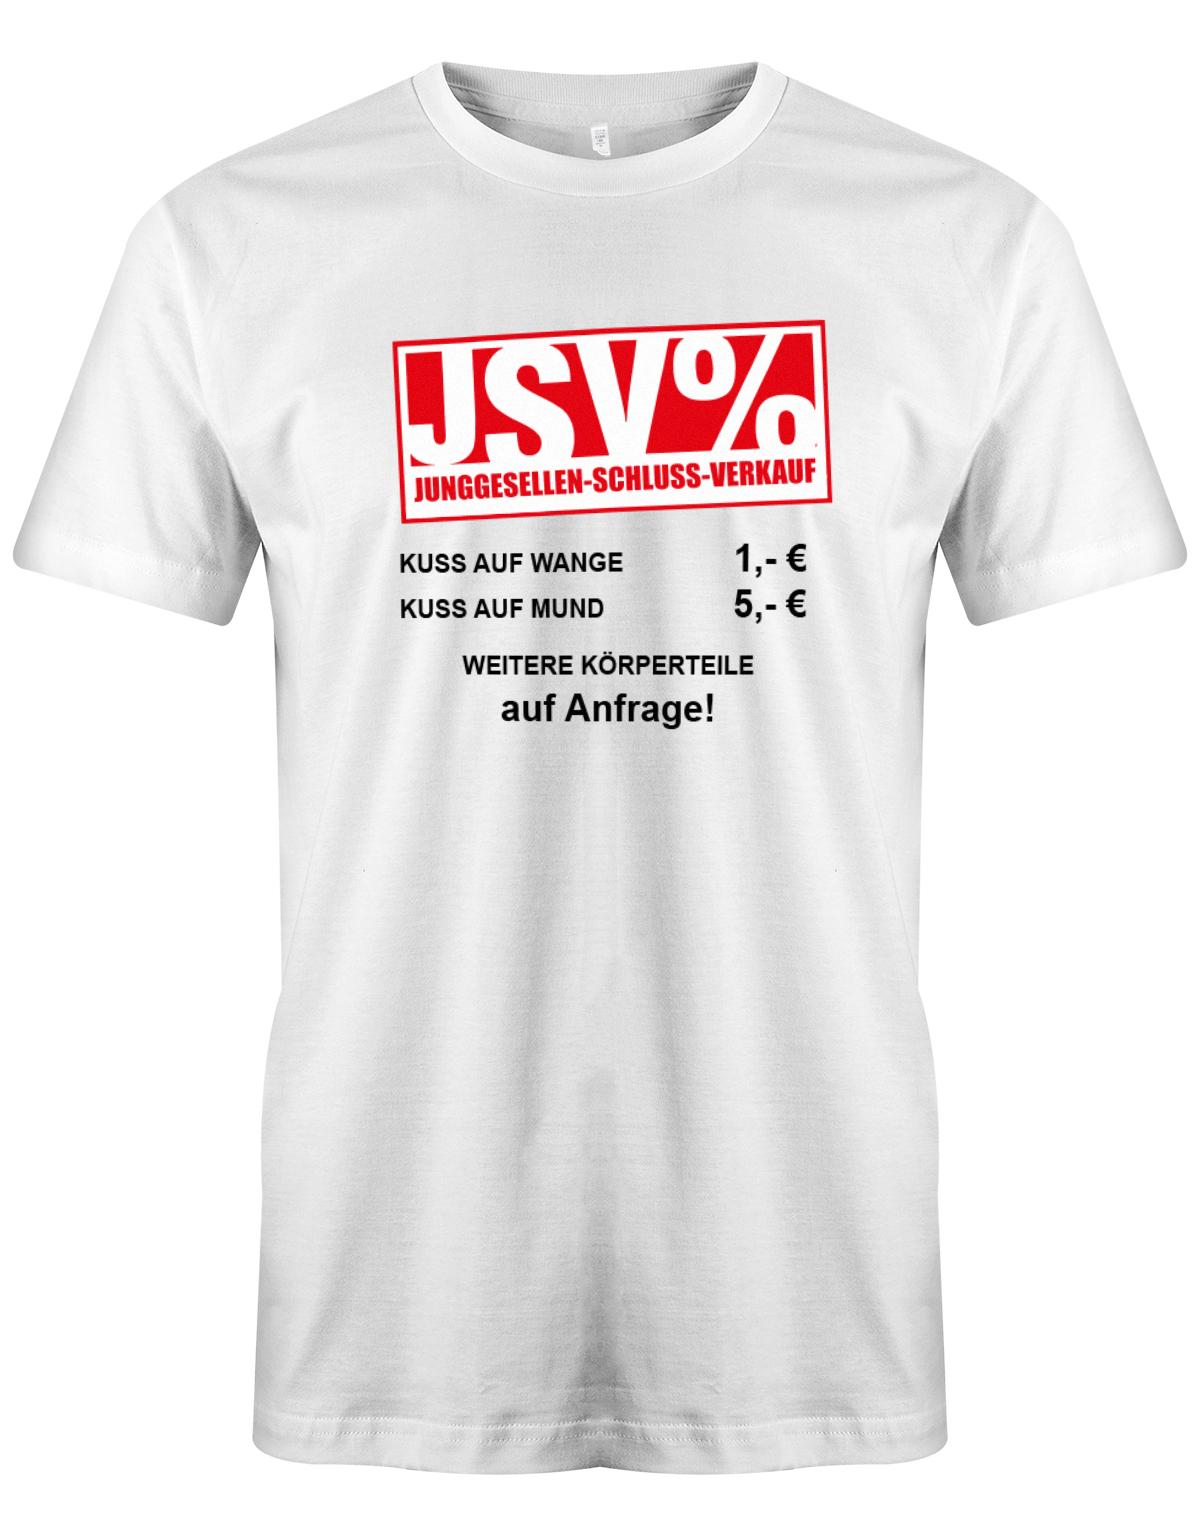 JSV-Kuss-auf-Wange-1-Euro-auf-Mund-5-Euro-Herren-JGA-Shirt-weiss